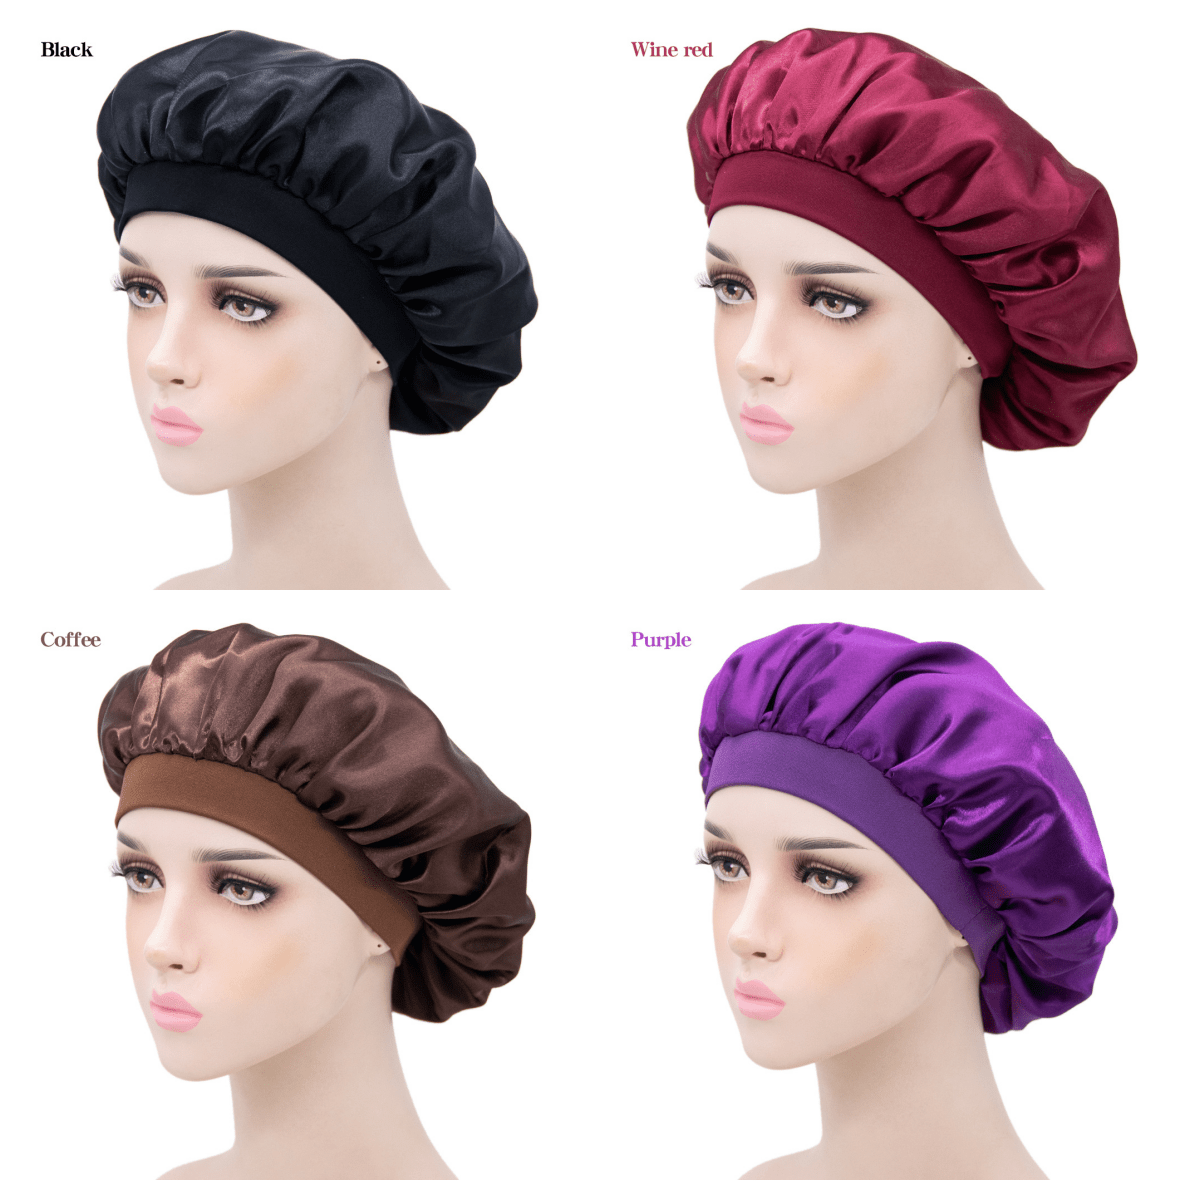  4 PCS Satin Bonnet for Sleeping,Hair Bonnets for